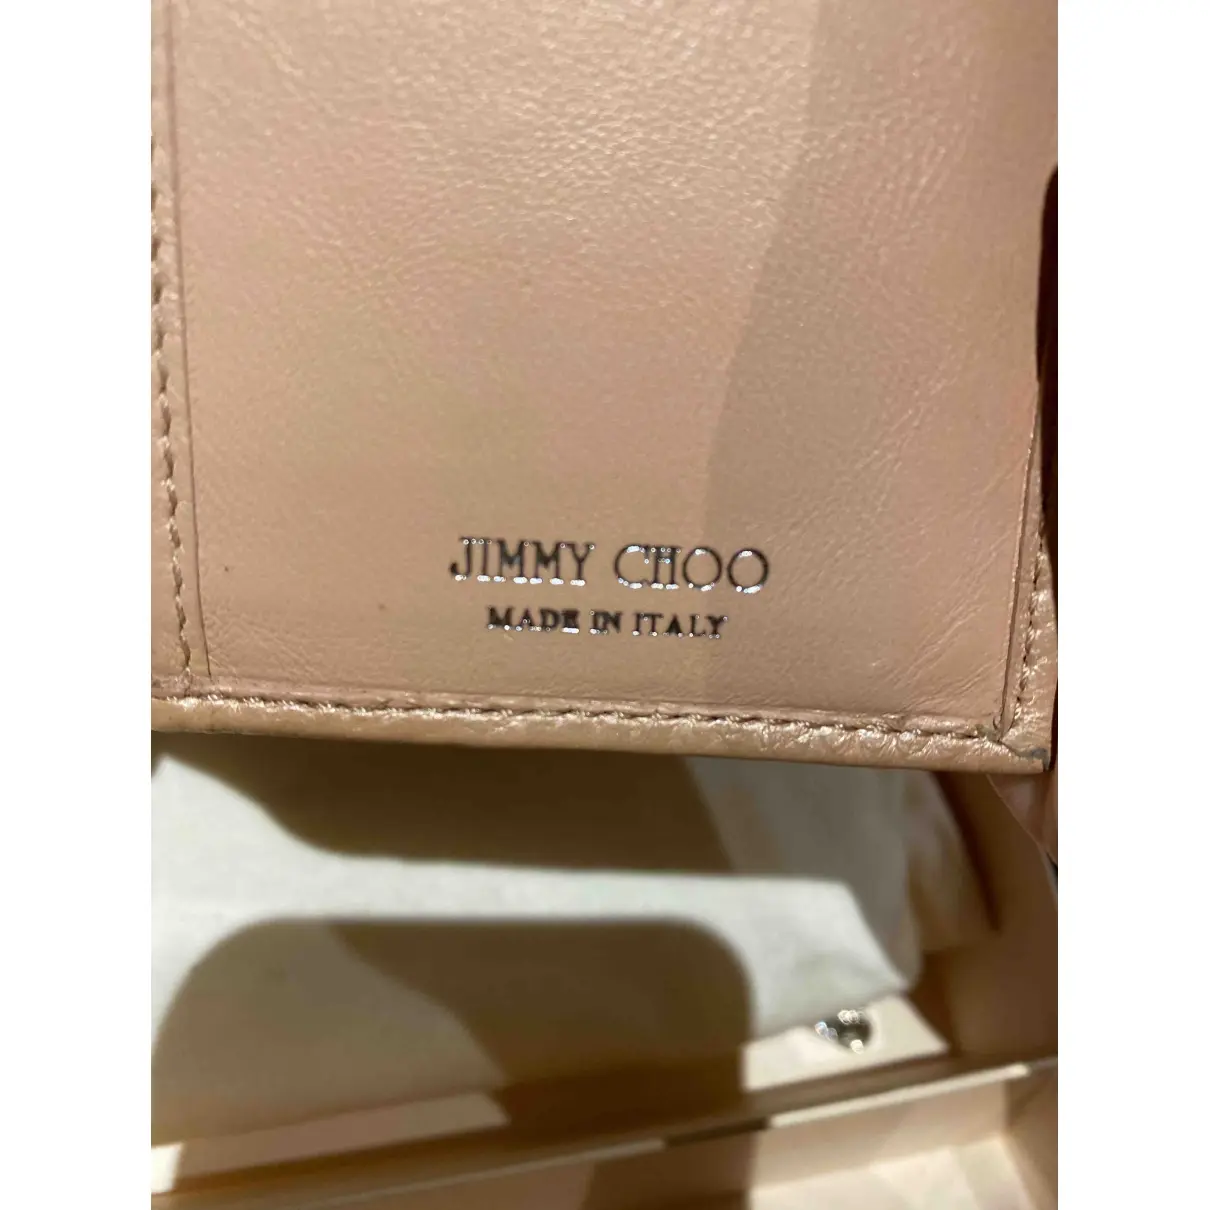 Buy Jimmy Choo Leather wallet online